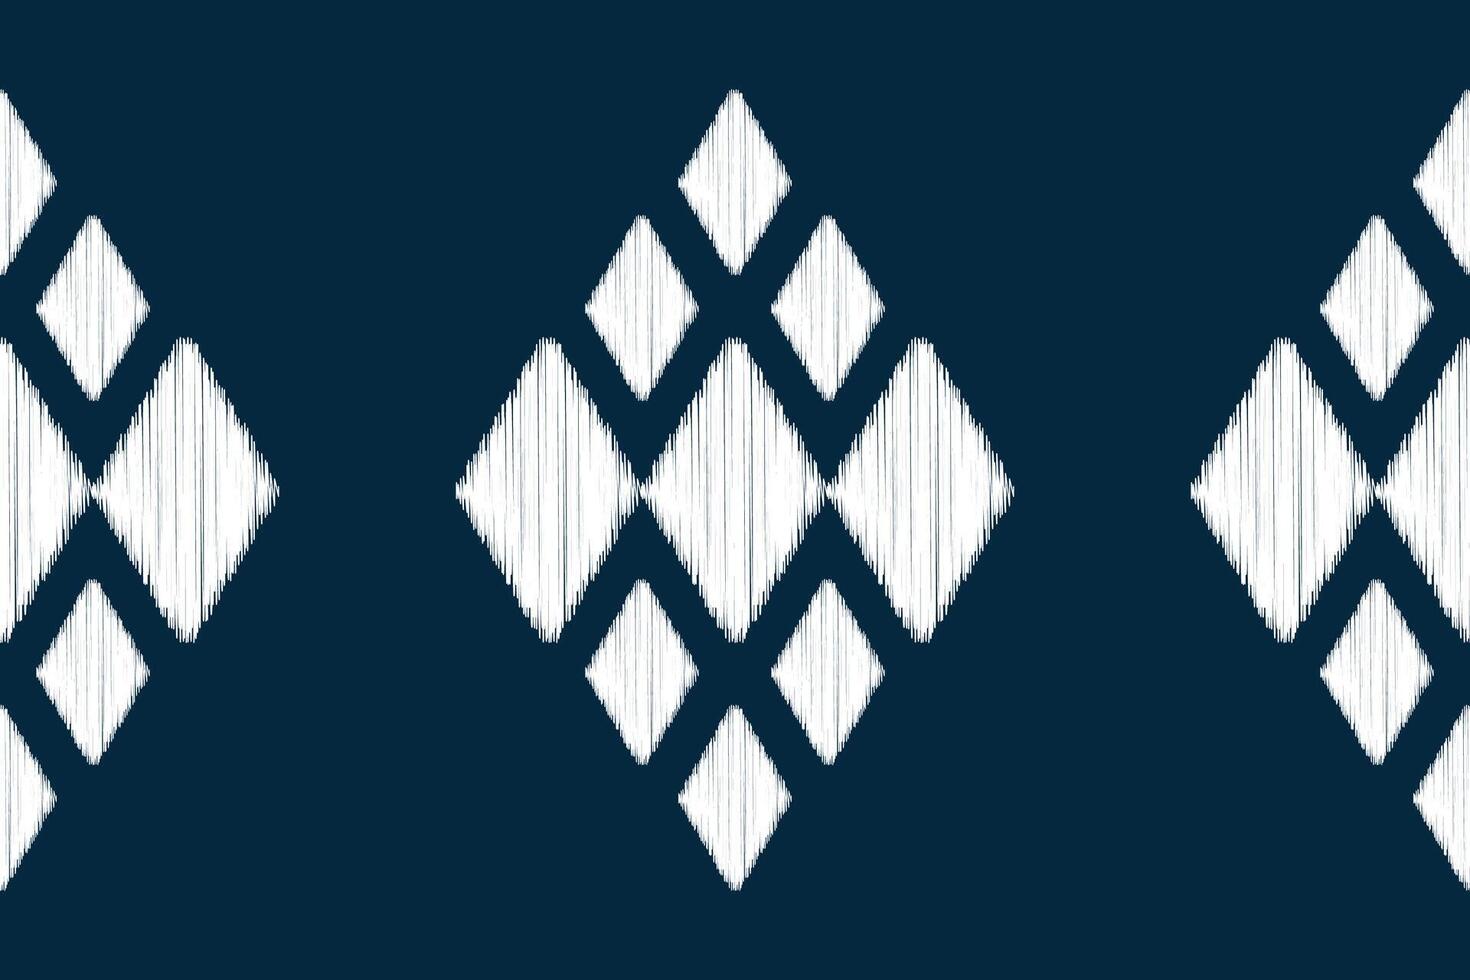 etnico ikat tessuto modello geometrico stile.africano ikat ricamo etnico orientale modello blu sfondo. astratto, illustrazione. trama, abbigliamento, cornice, decorazione, motivo. vettore